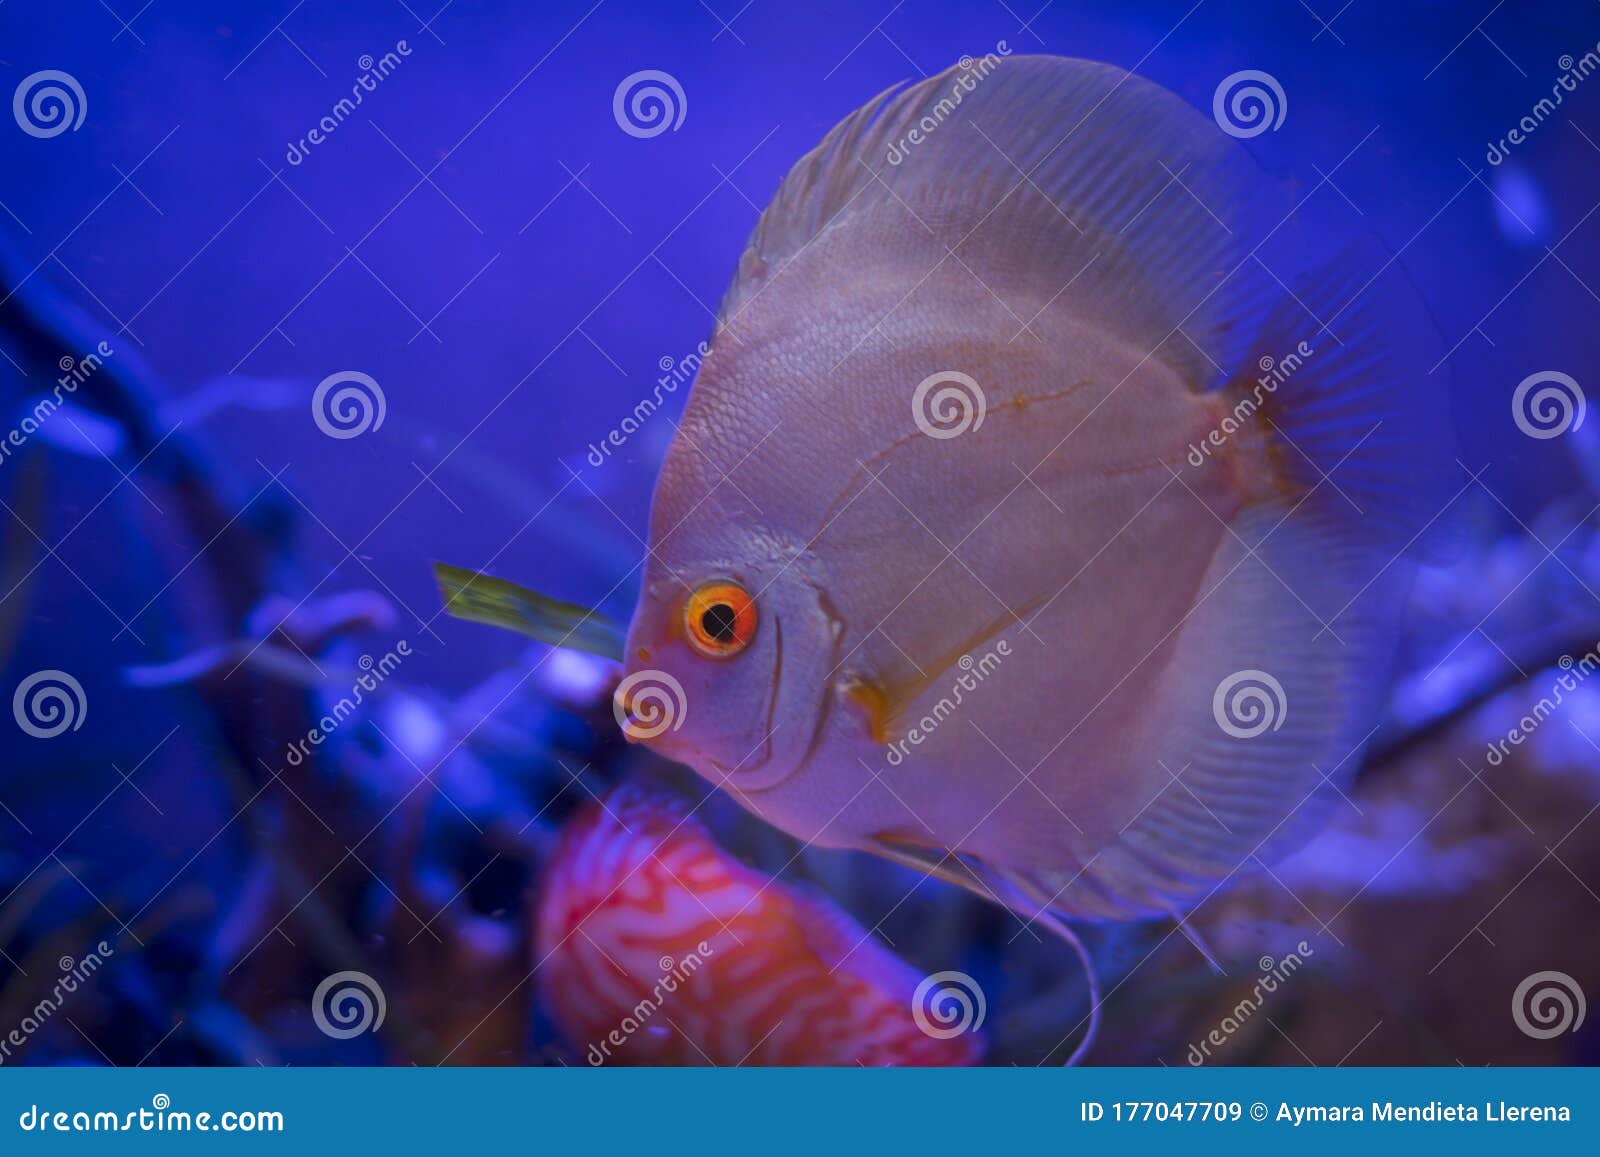 fantastic discus fish in the aquarium